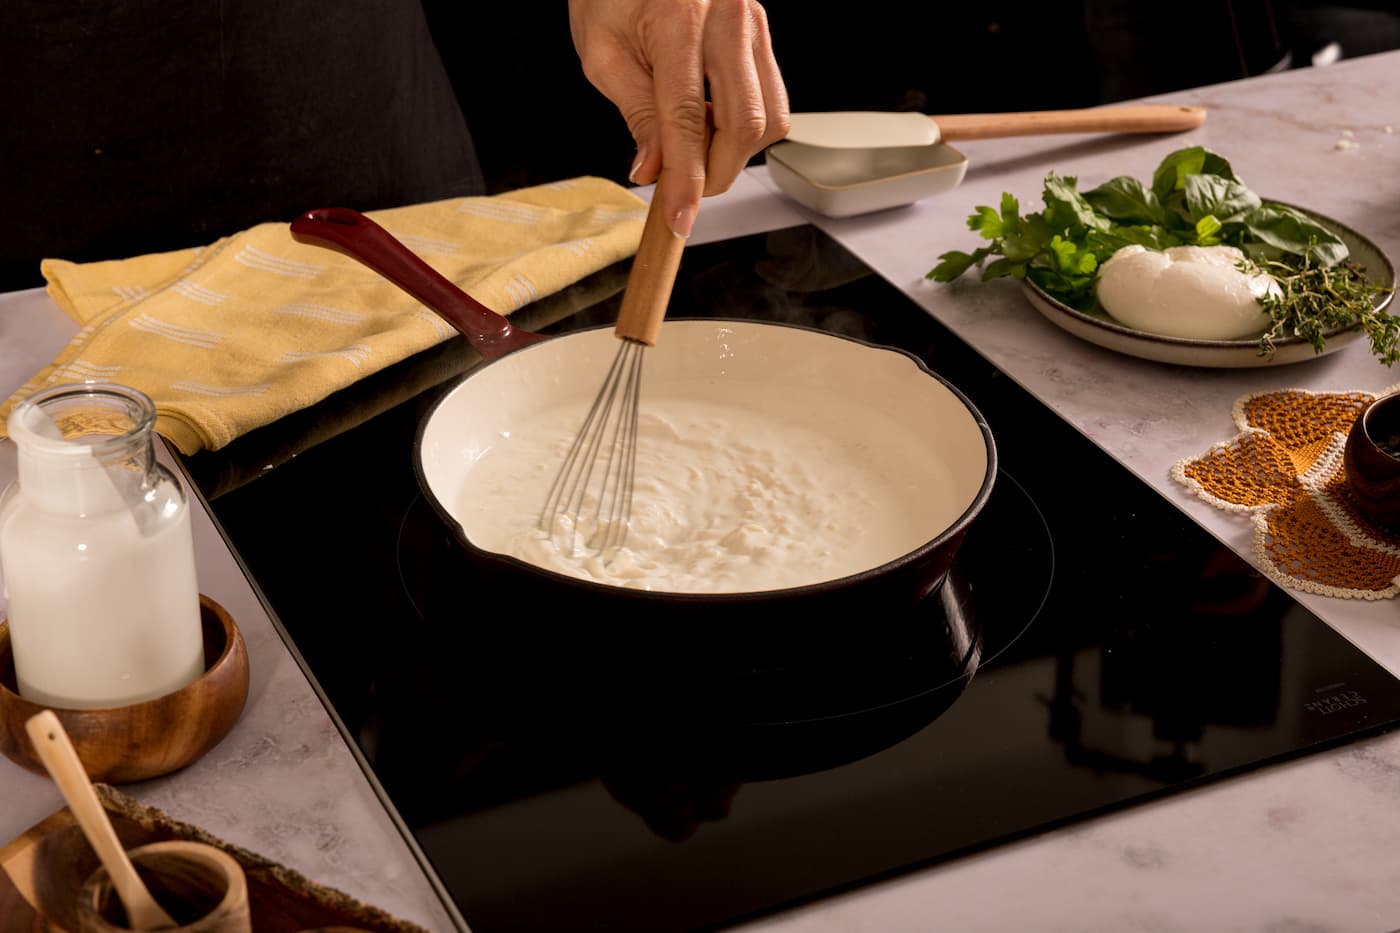 Receta Ravioli de Calabaza y Toque de Mantequilla con salsa tres quesos. Paso 3: vertemos la nata y la leche, y llevamos a ebullición